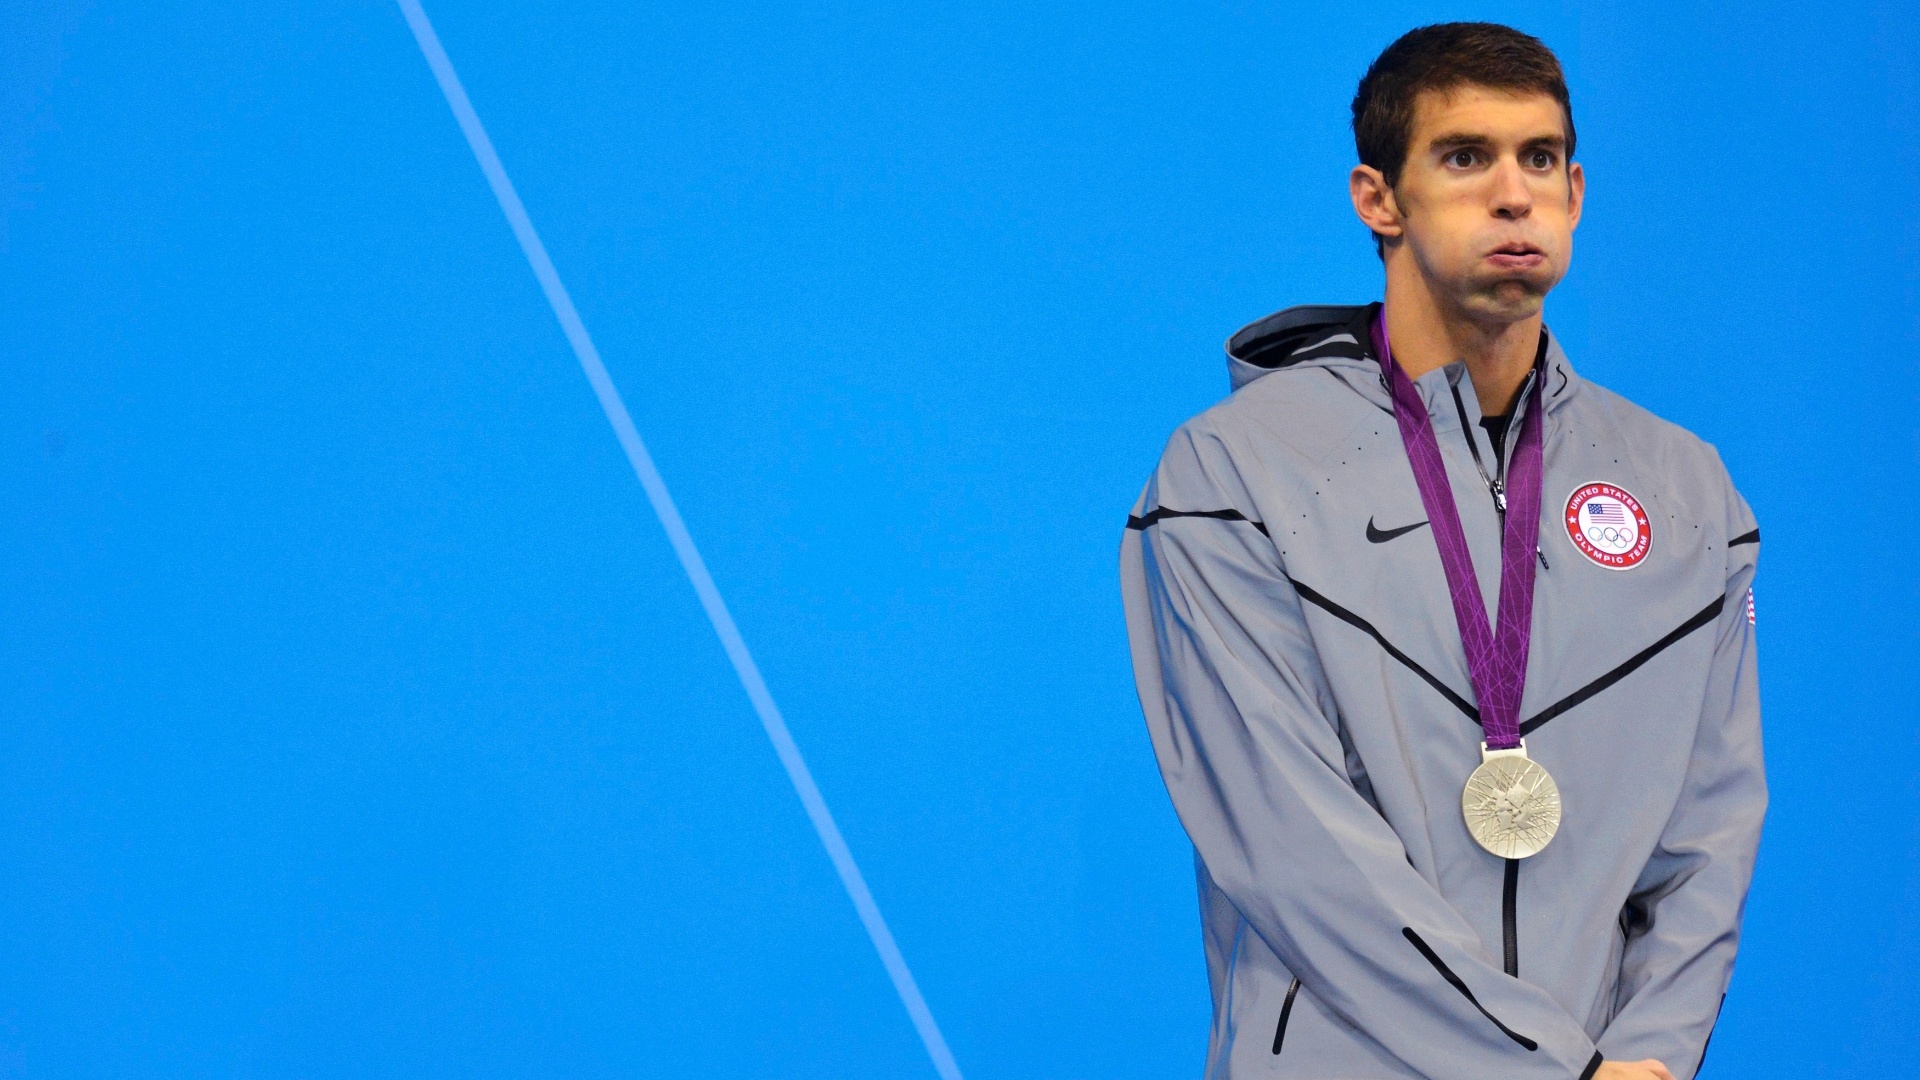 Michael Phelps parece cansado enquanto recebe a medalha de prata na natação